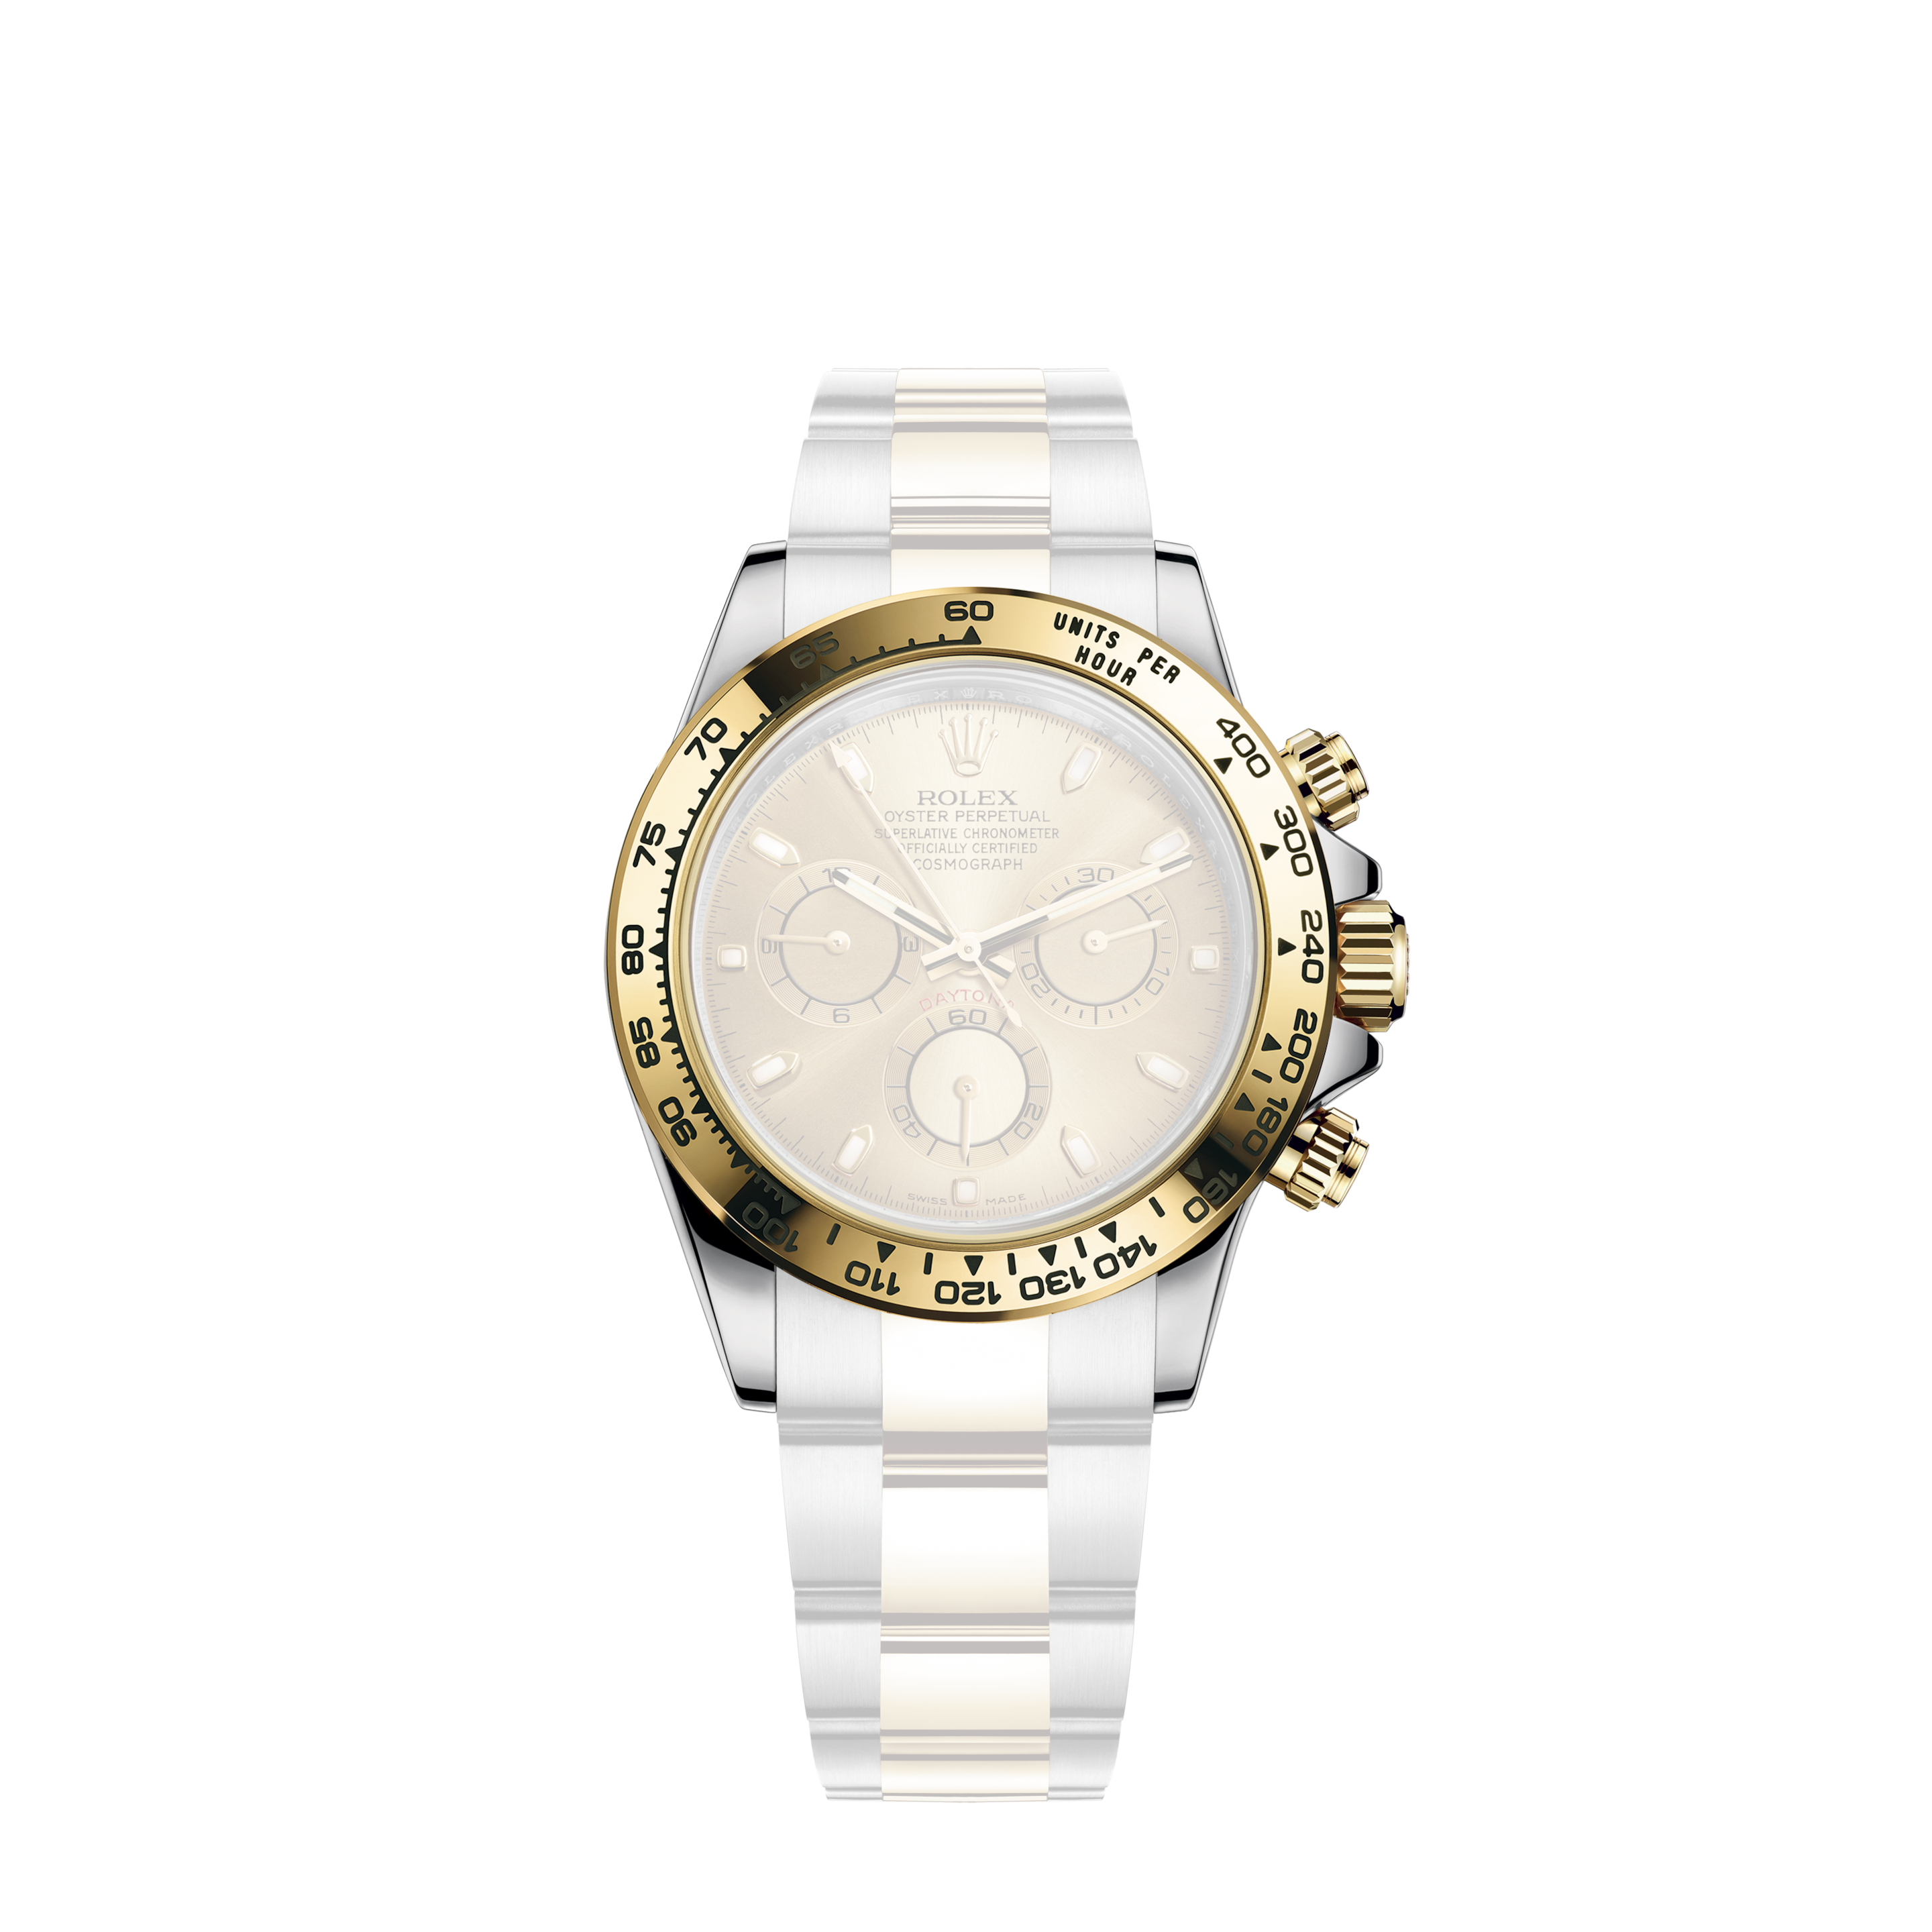 Rolex Explorer Automatic Chronometer Black Dial Men's Watch - 124270-0001